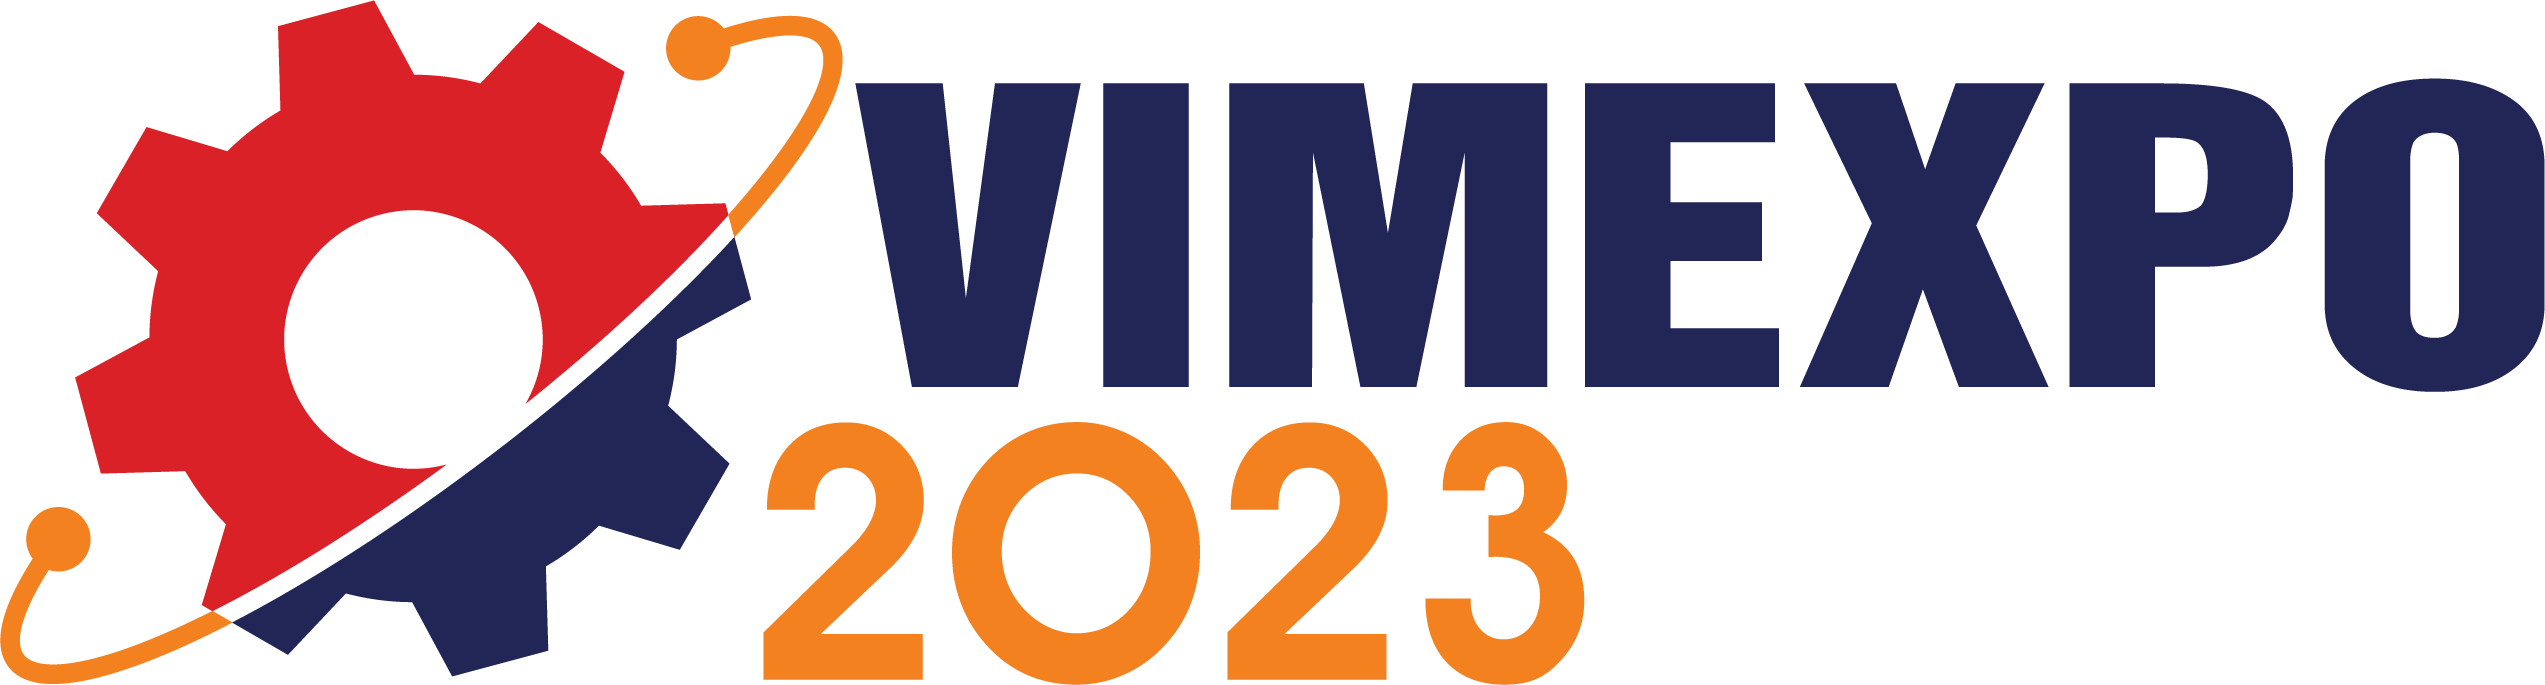 VIMEXPO 2021 - Triển lãm trực tuyến